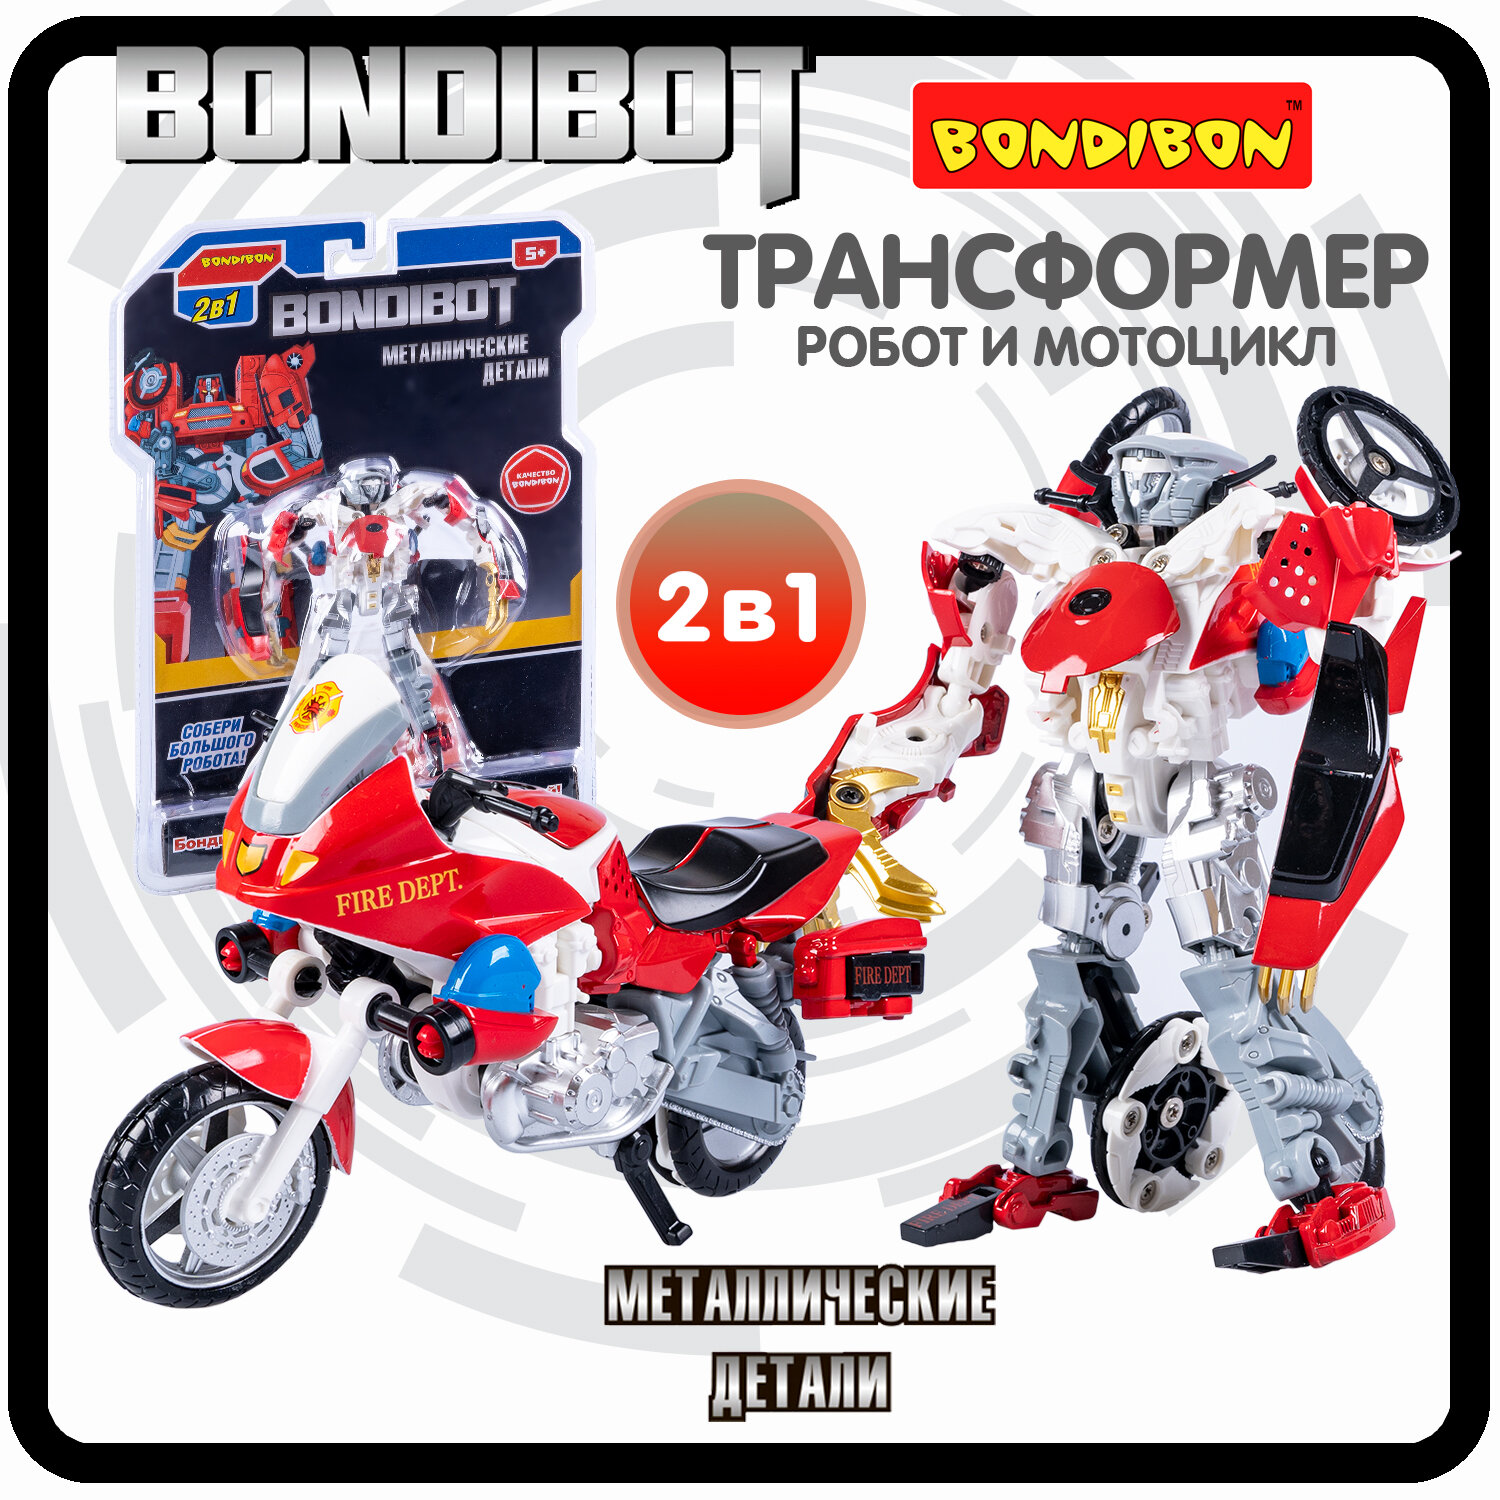 Трансформер робот-мотоцикл, метал. детали, 2в1 BONDIBOT Bondibon, цвет красный CRD